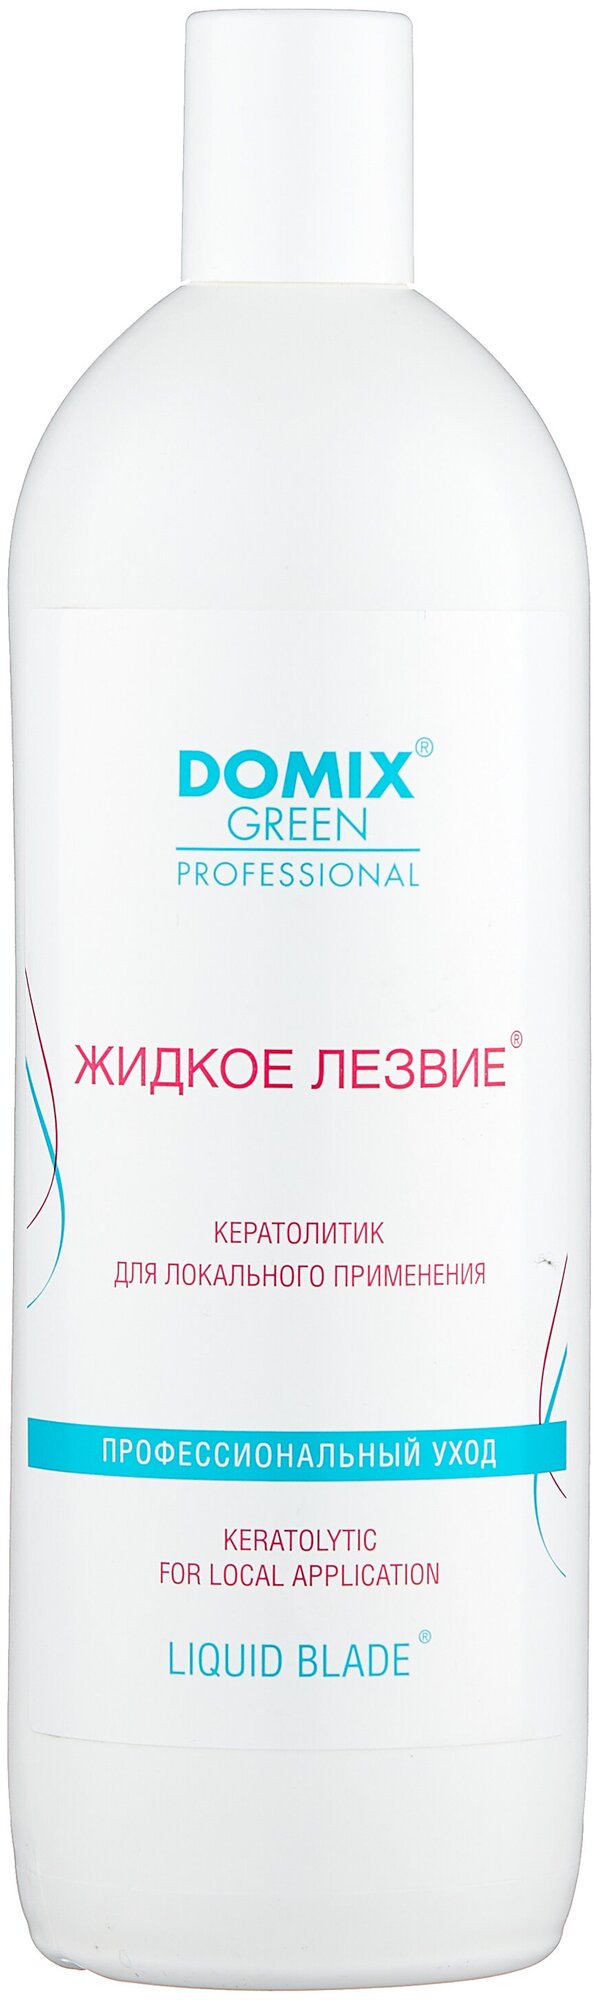 Domix Green Professional Гель Жидкое лезвие для удаления натоптышей и уплотнений кожи стоп